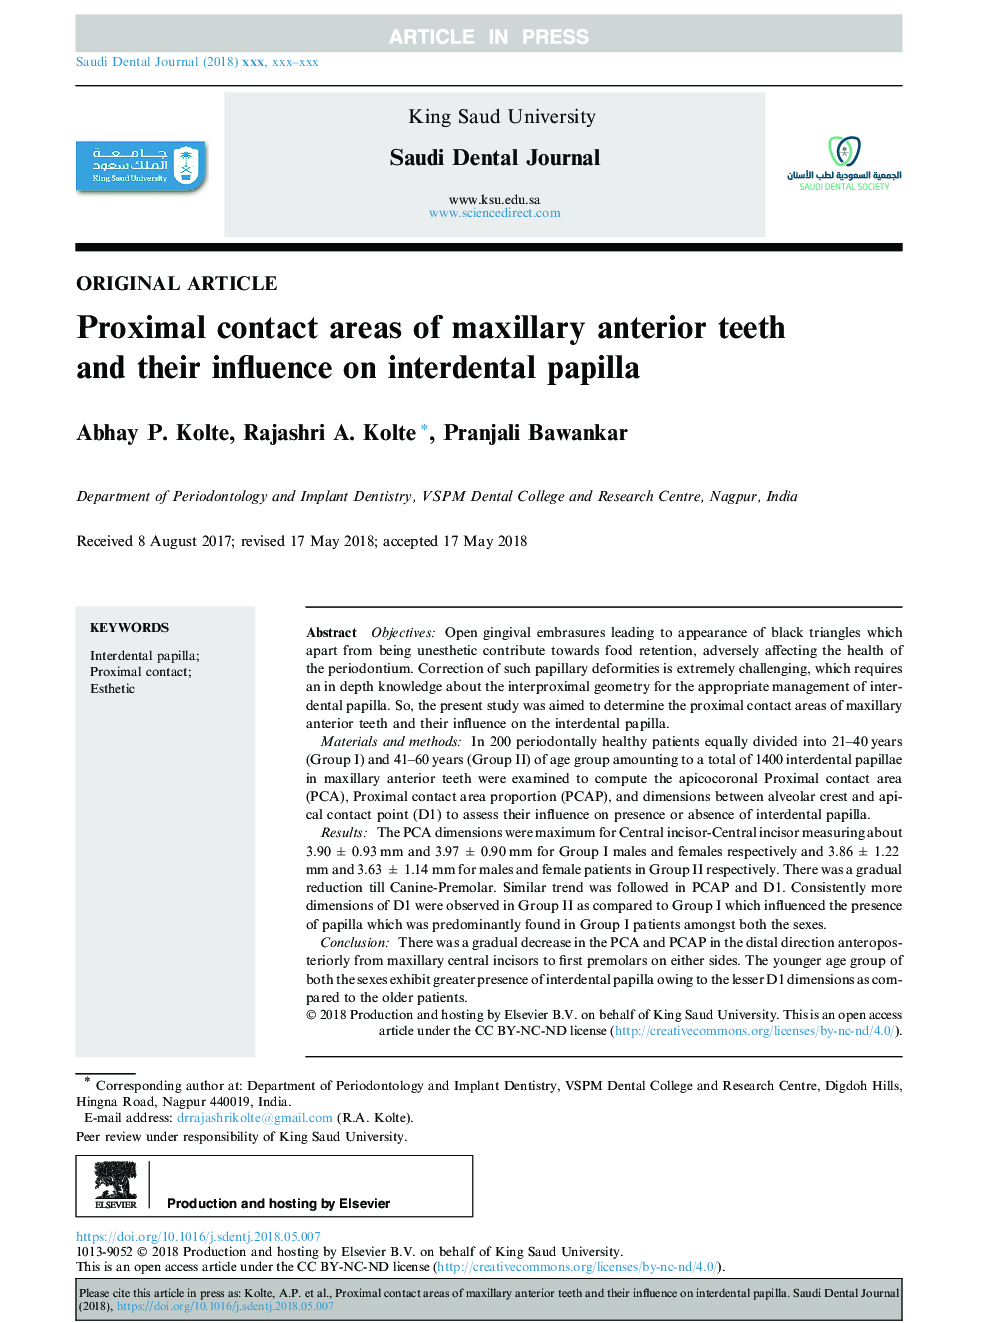 مناطق تماس با پروگزیمال دندان های قدامی ماگزیلاری و تاثیر آنها بر پاپیل بین دندانی